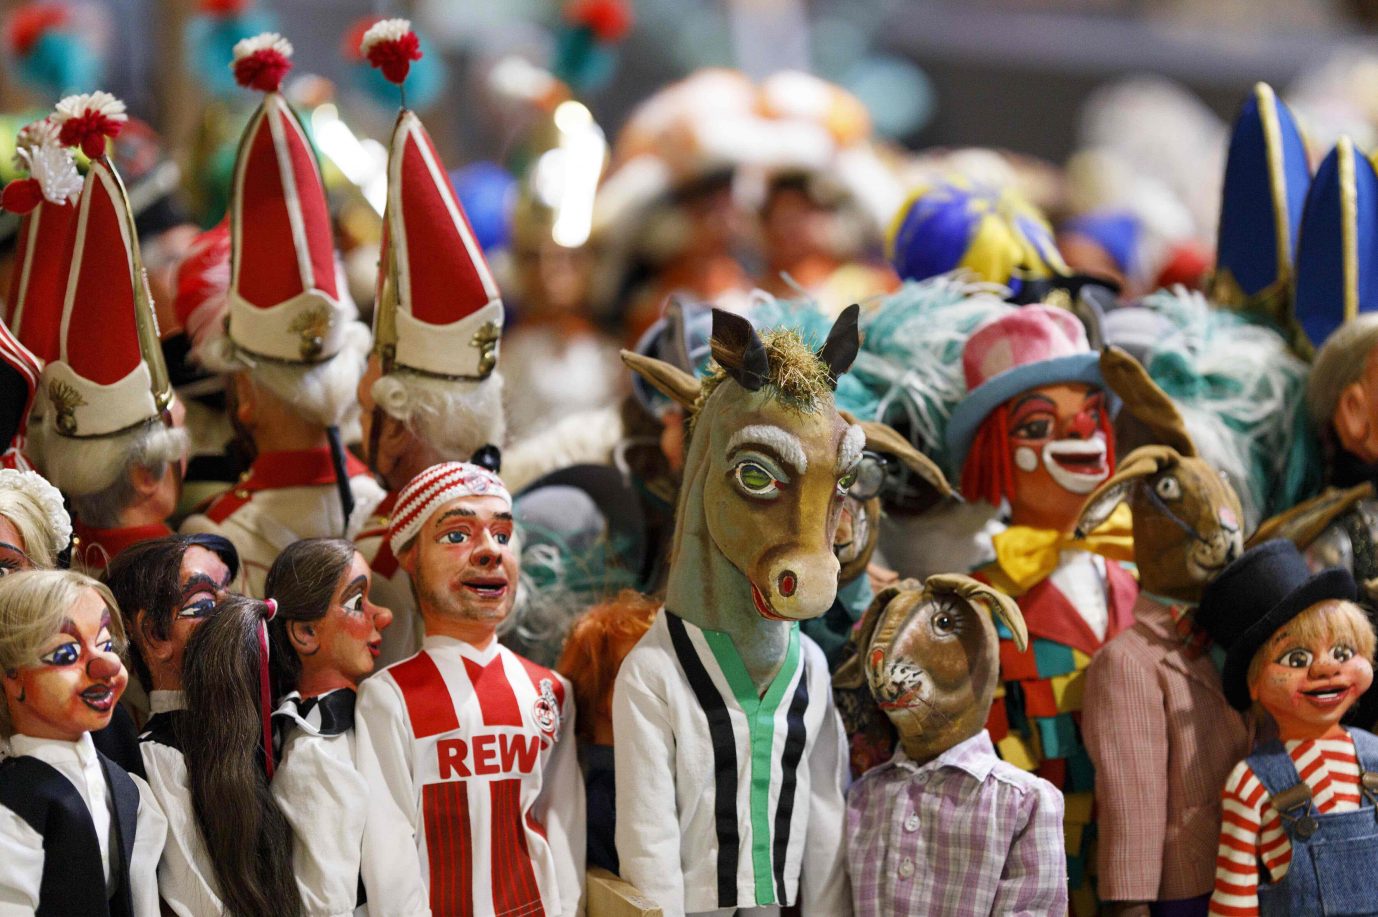 Die Kölner sollen Karneval in diesem Jahr in sogenannten Brauchtumszonen feiern Ob sich Kölsch-Comanchen das gefallen lassen? (Symbolbild) Foto: picture alliance / Geisler-Fotopress | Christoph Hardt/Geisler-Fotopres